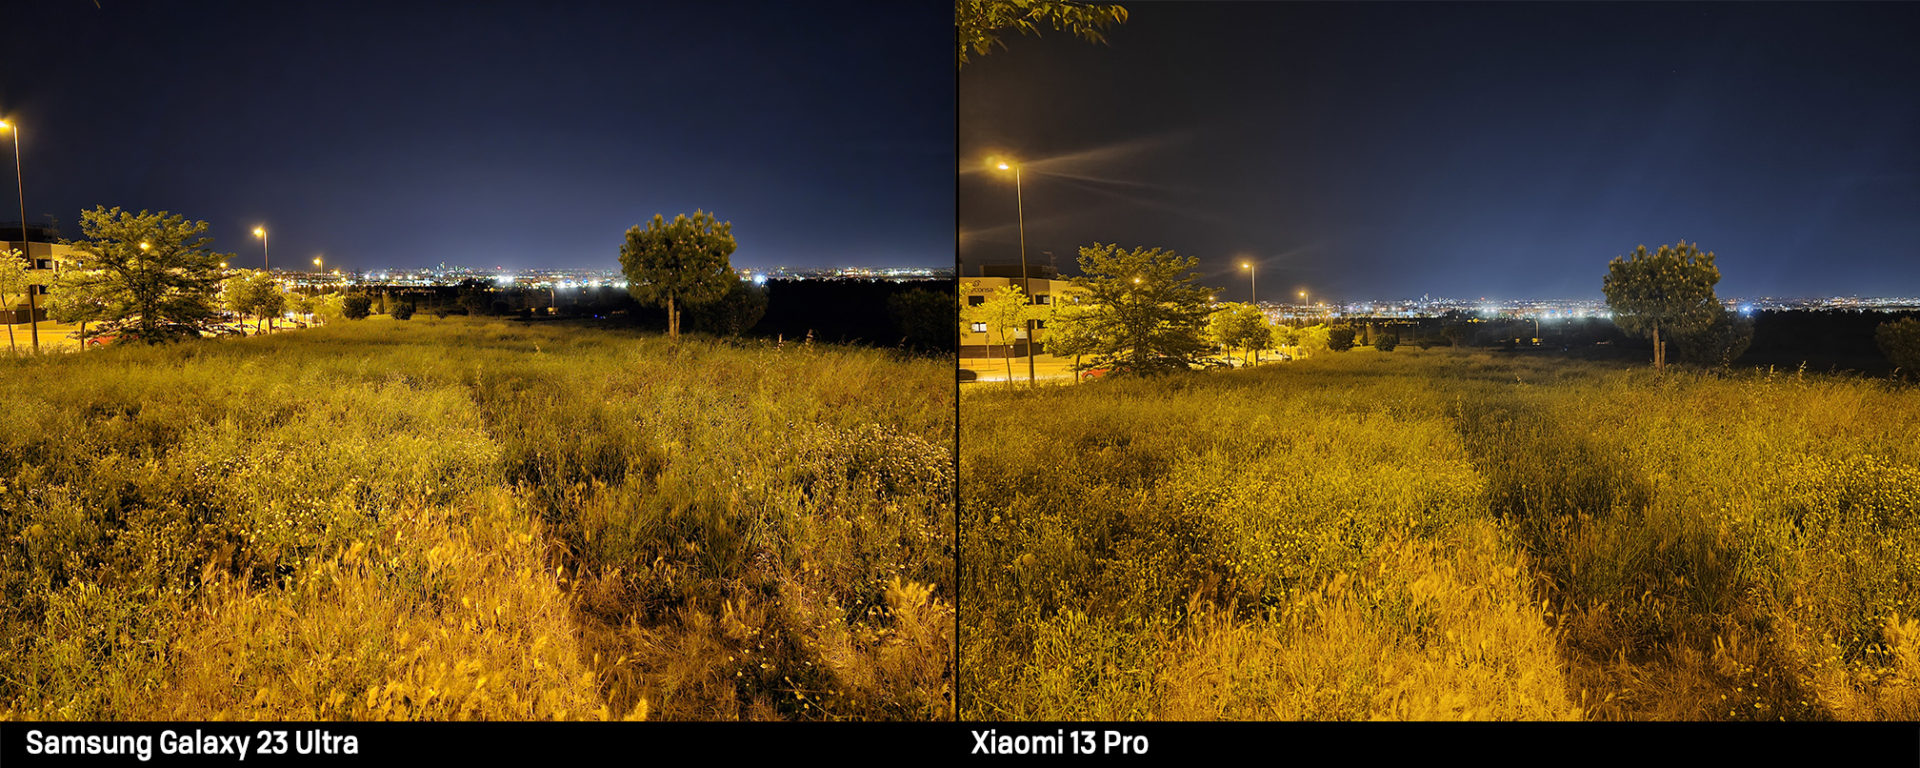 Comparativa foto nocturna Samsung S23 Ultra y Xiaomi 13 Pro